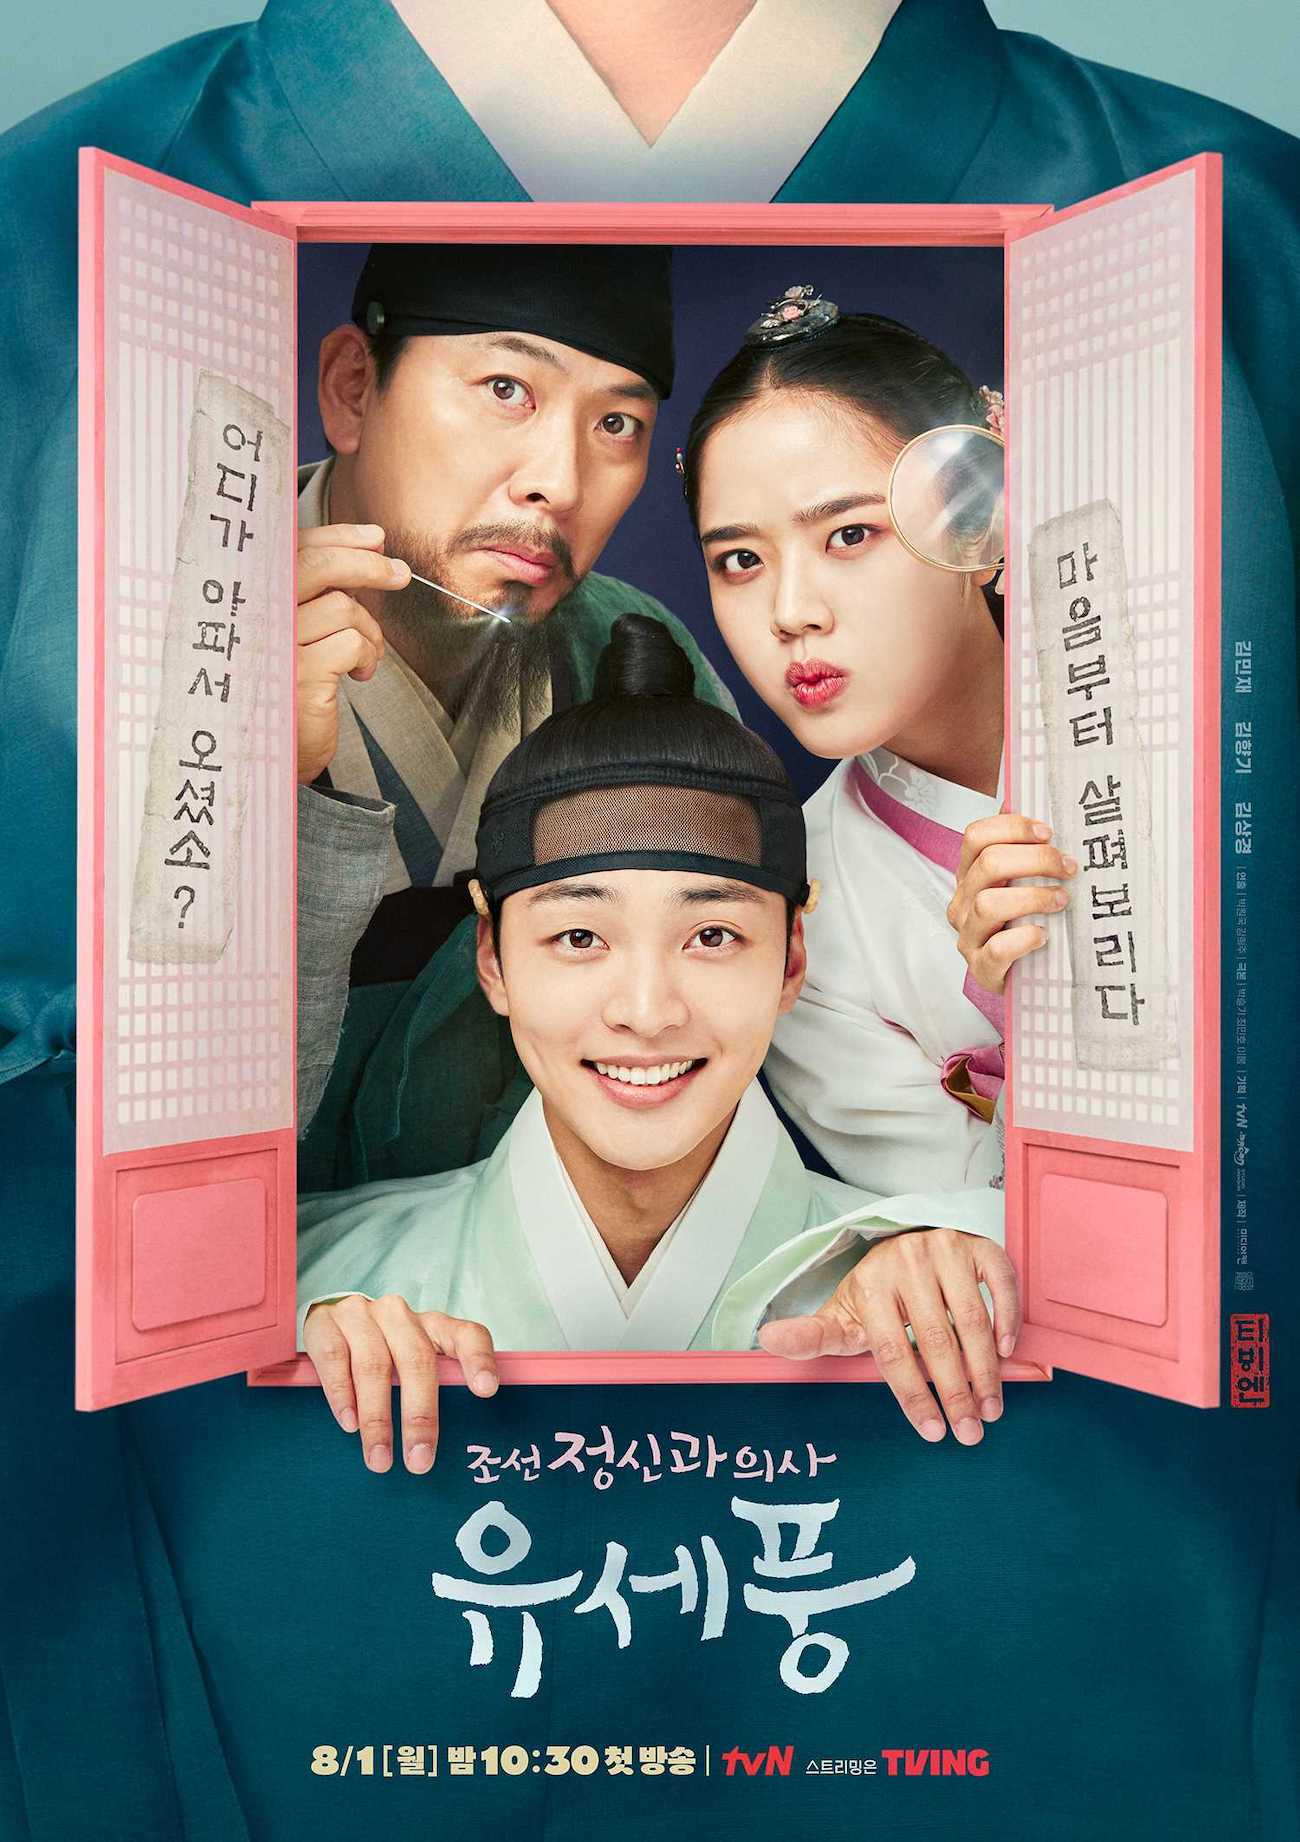 ดูหนังออนไลน์ Poong the Joseon Psychiatrist season 1